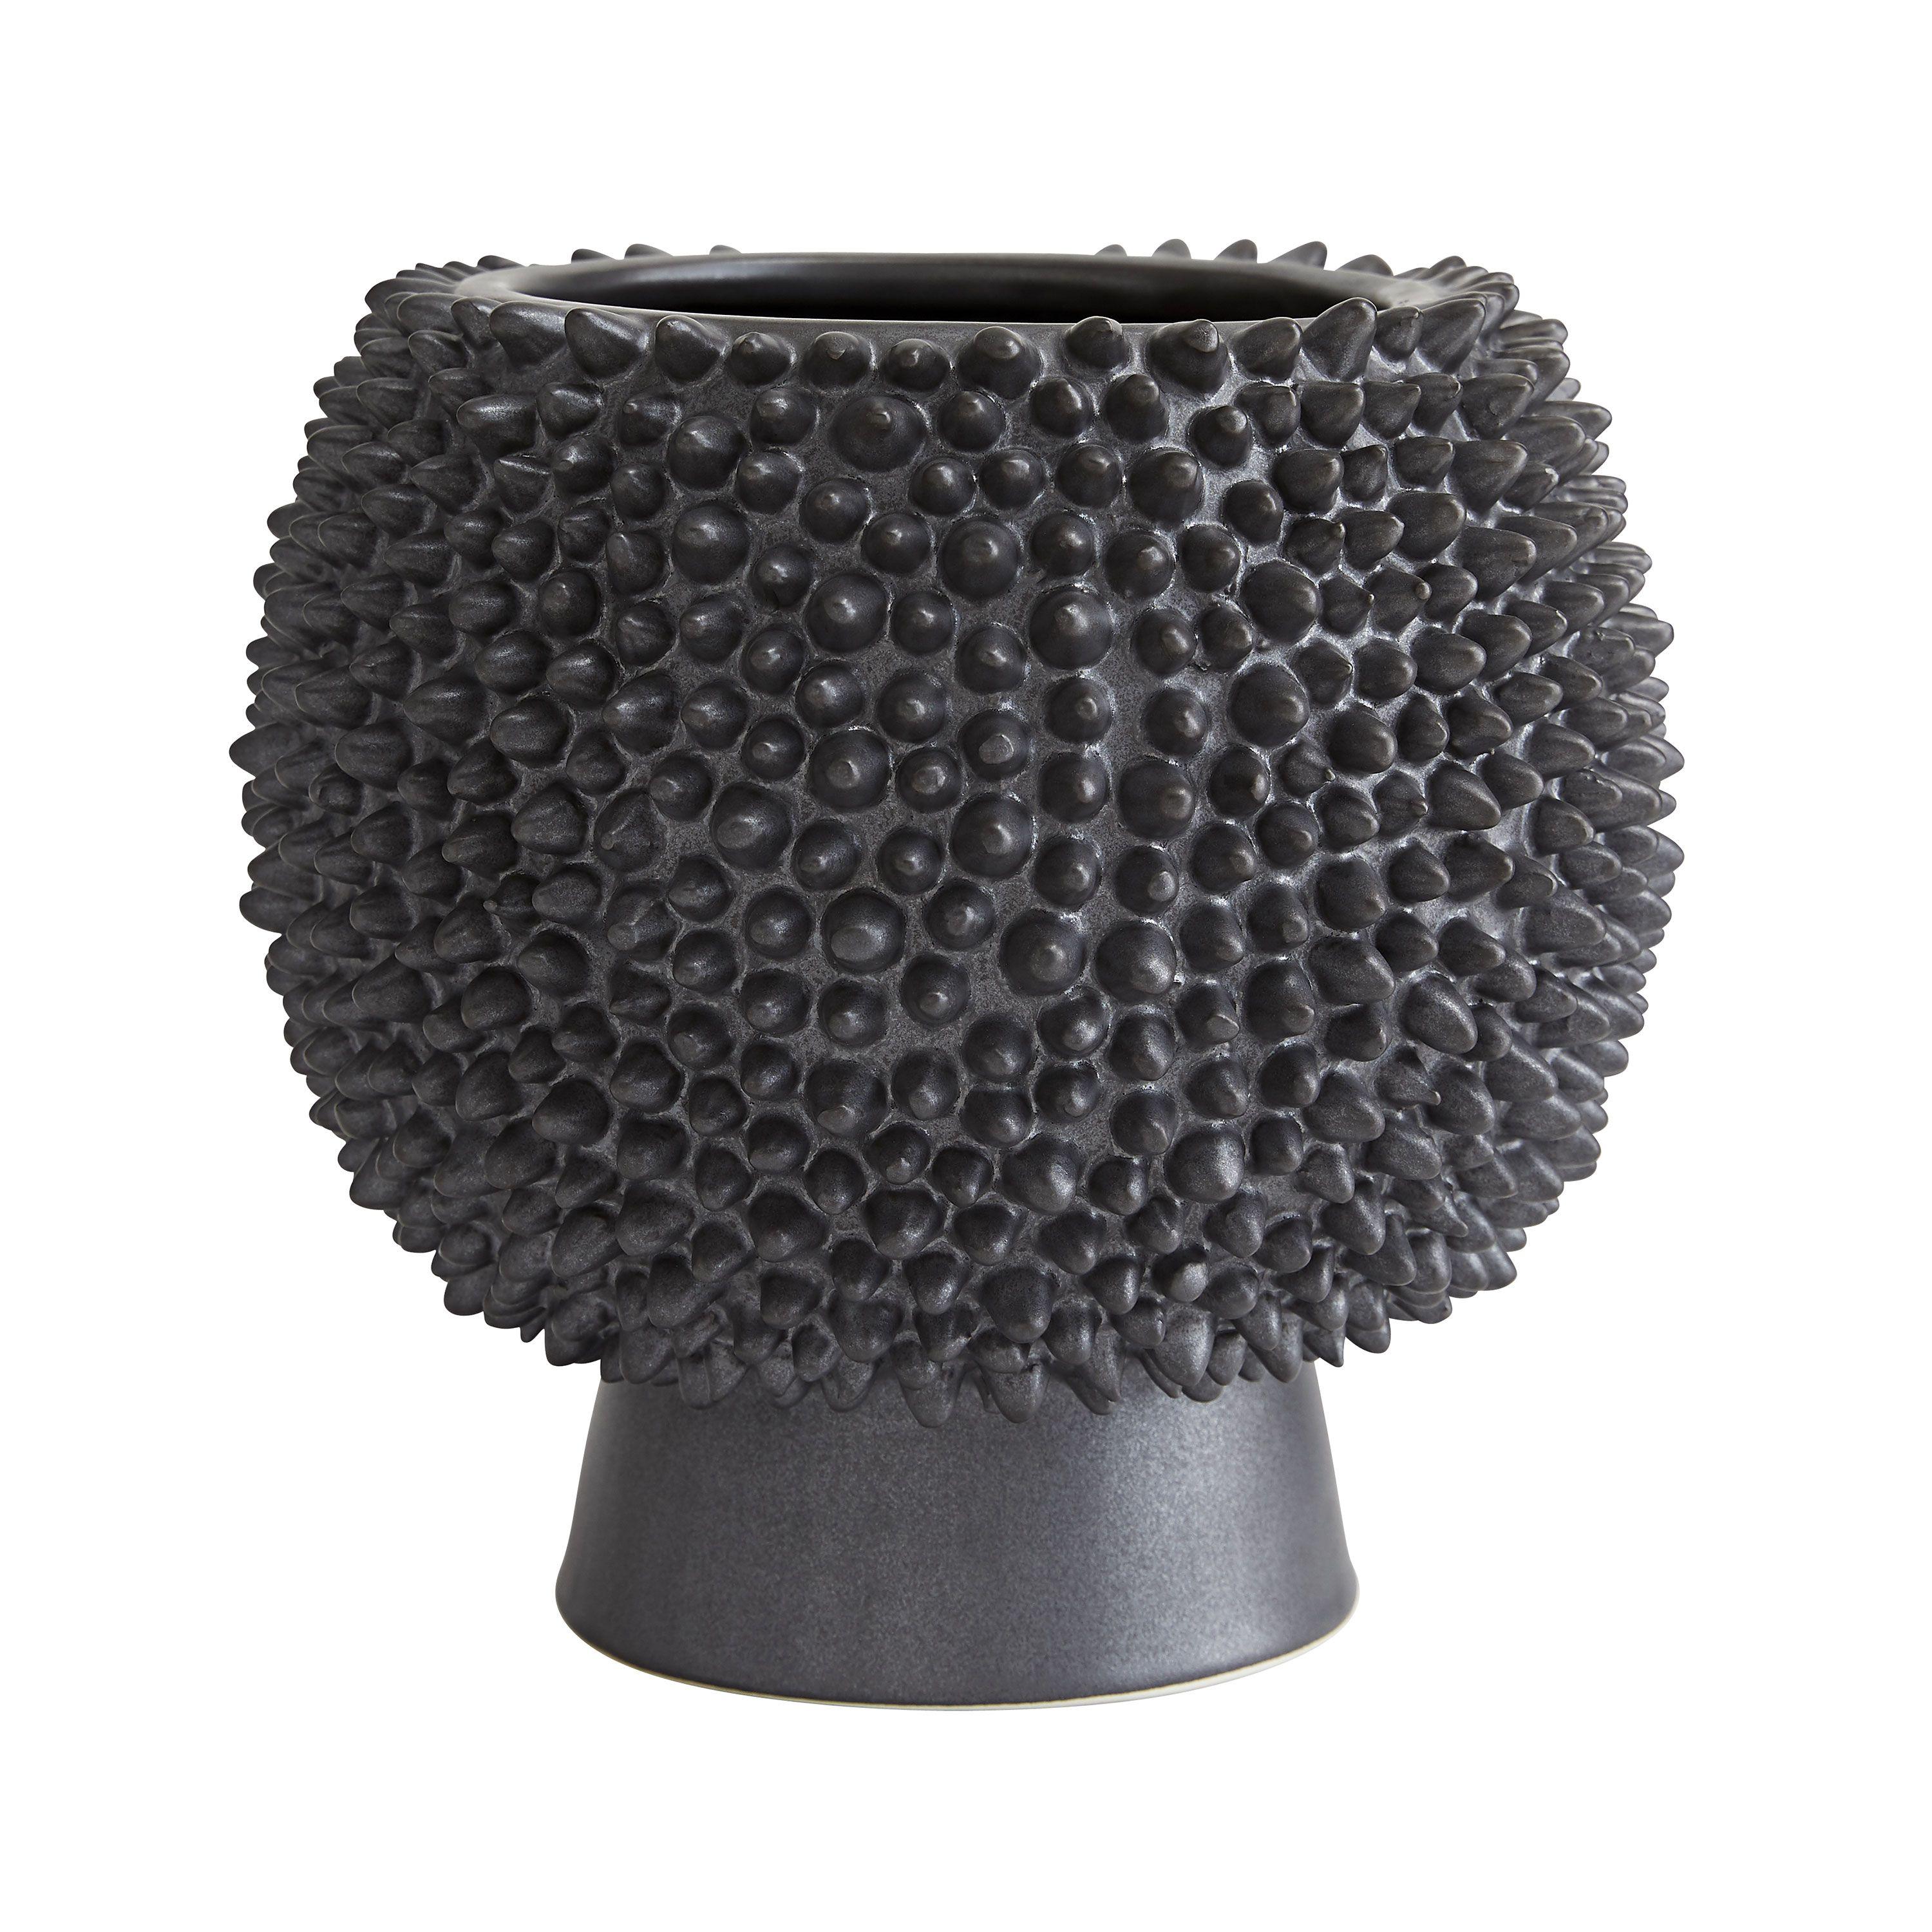 Купить Ваза Daria Tall Vase в интернет-магазине roooms.ru